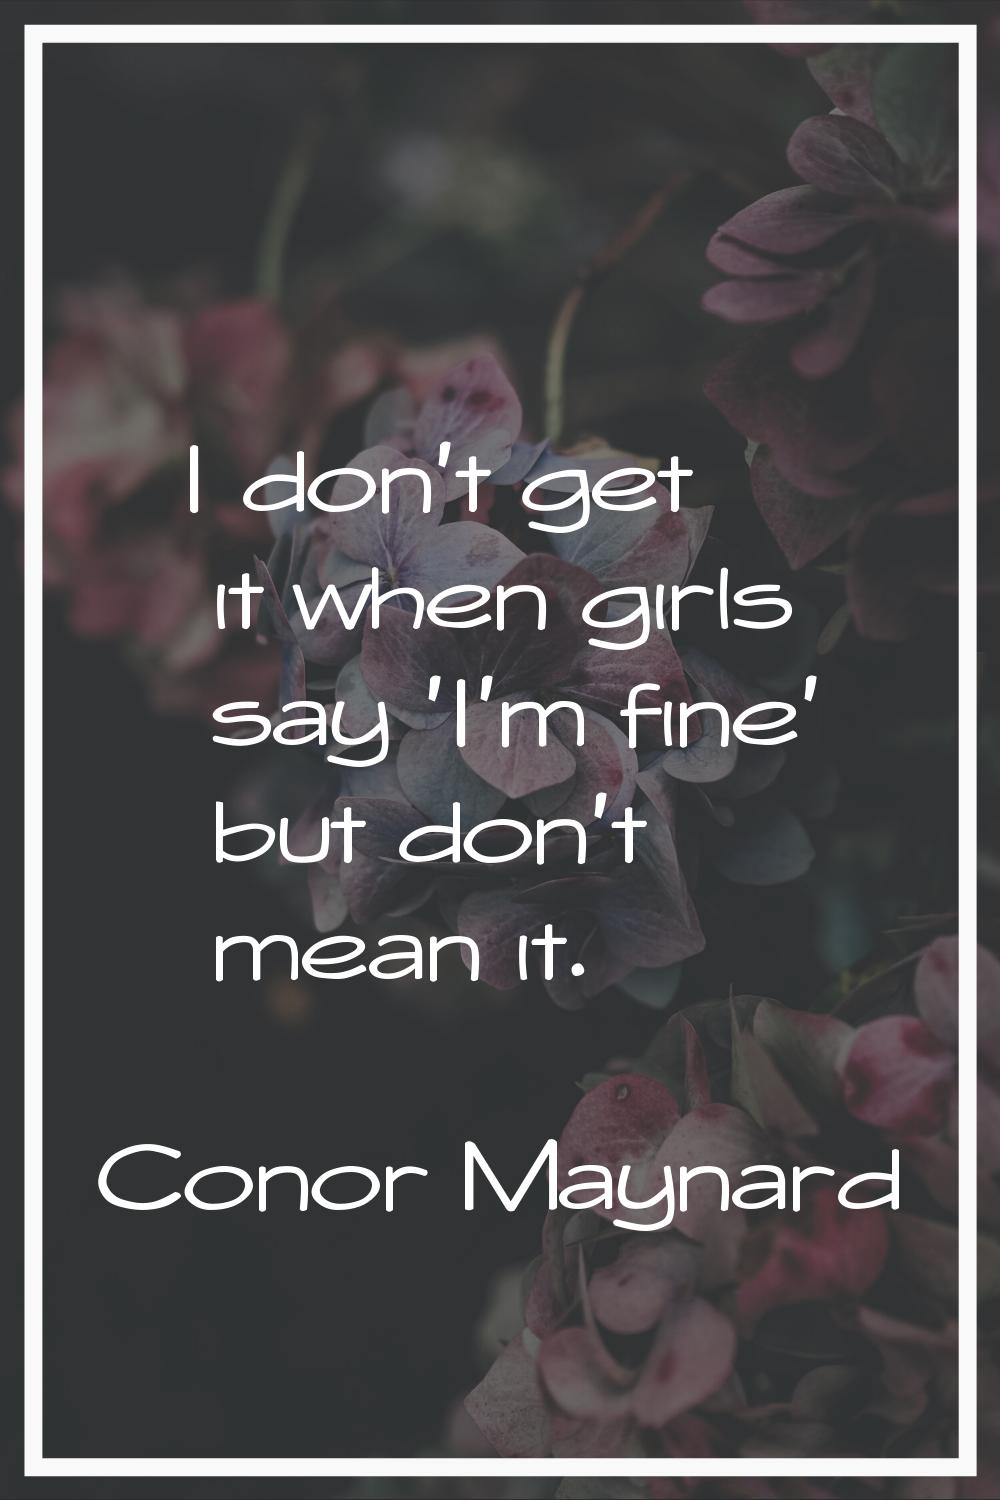 I don't get it when girls say 'I'm fine' but don't mean it.